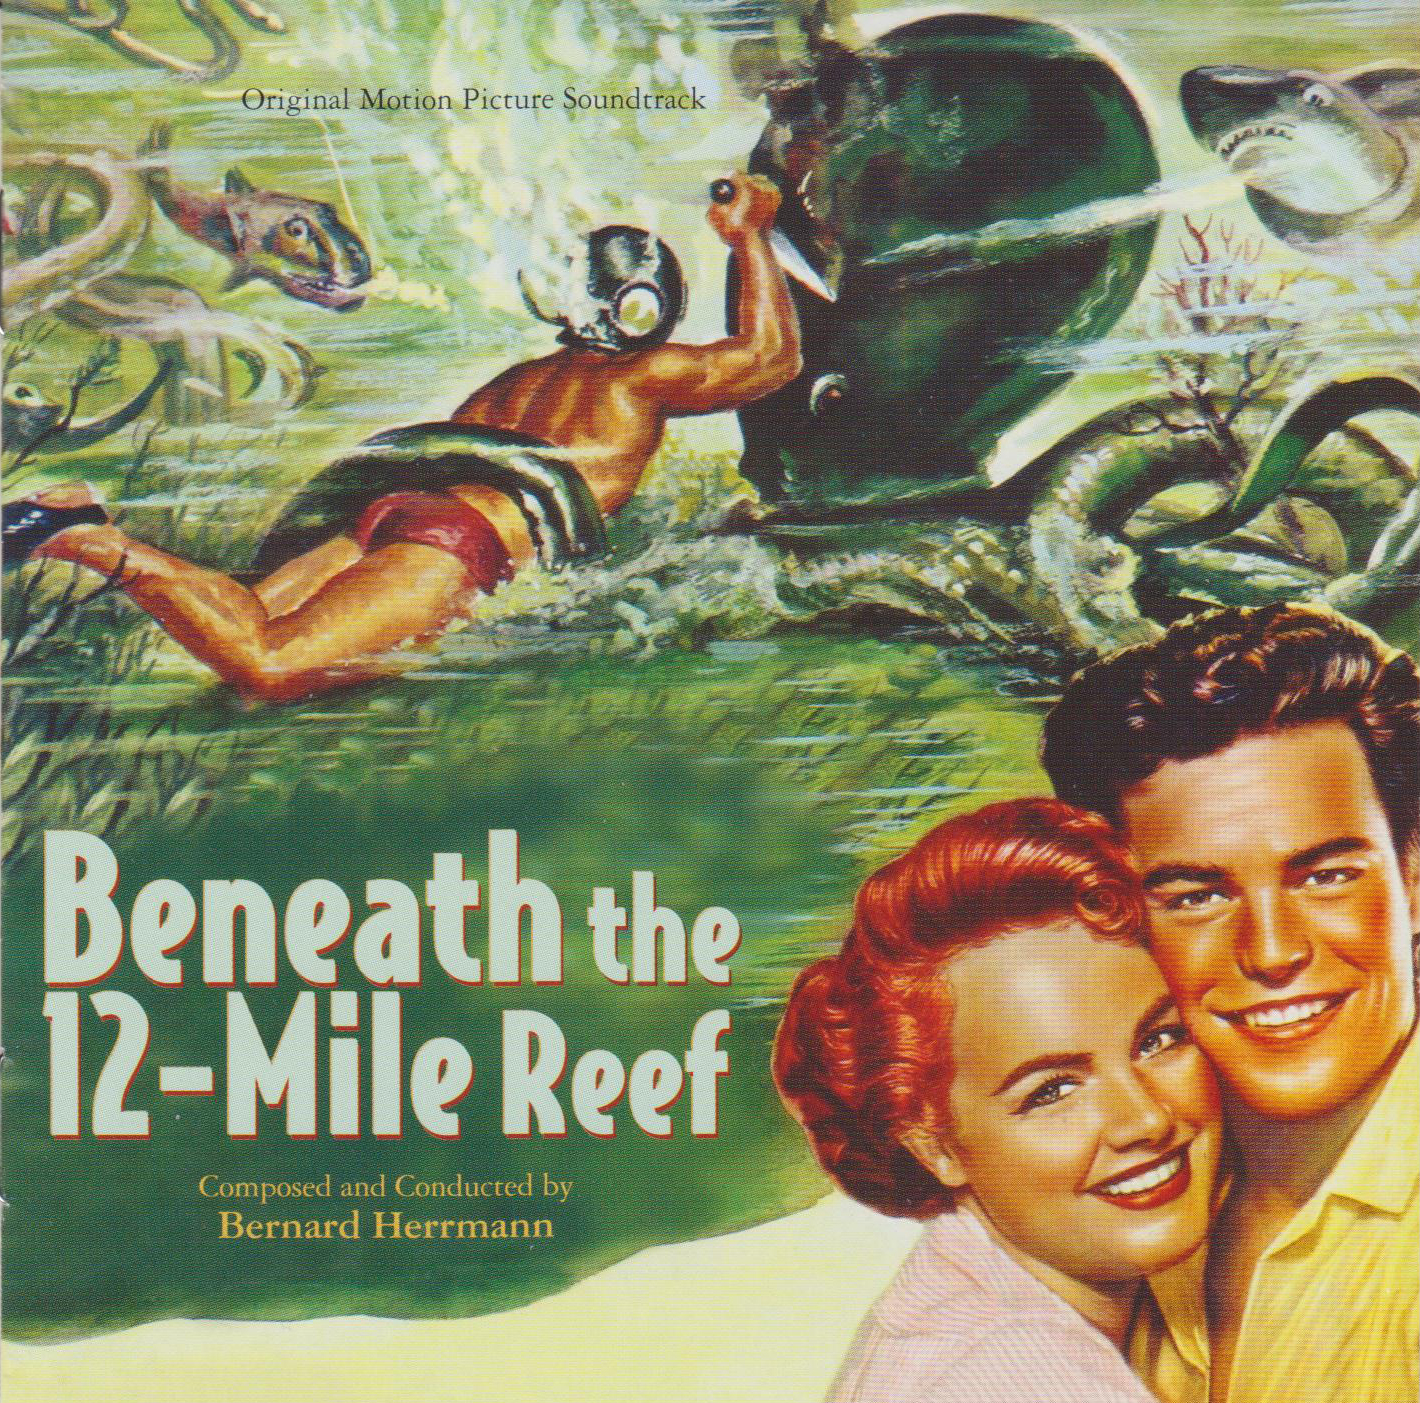 12 mile. Beneath the 12-Mile Reef. Beneath the 12-Mile Reef, 1953 poster. Обложки и постеры к фильму коралловый риф beneath the 12-Mile Reef (1953. Sink to the bottom обложка.